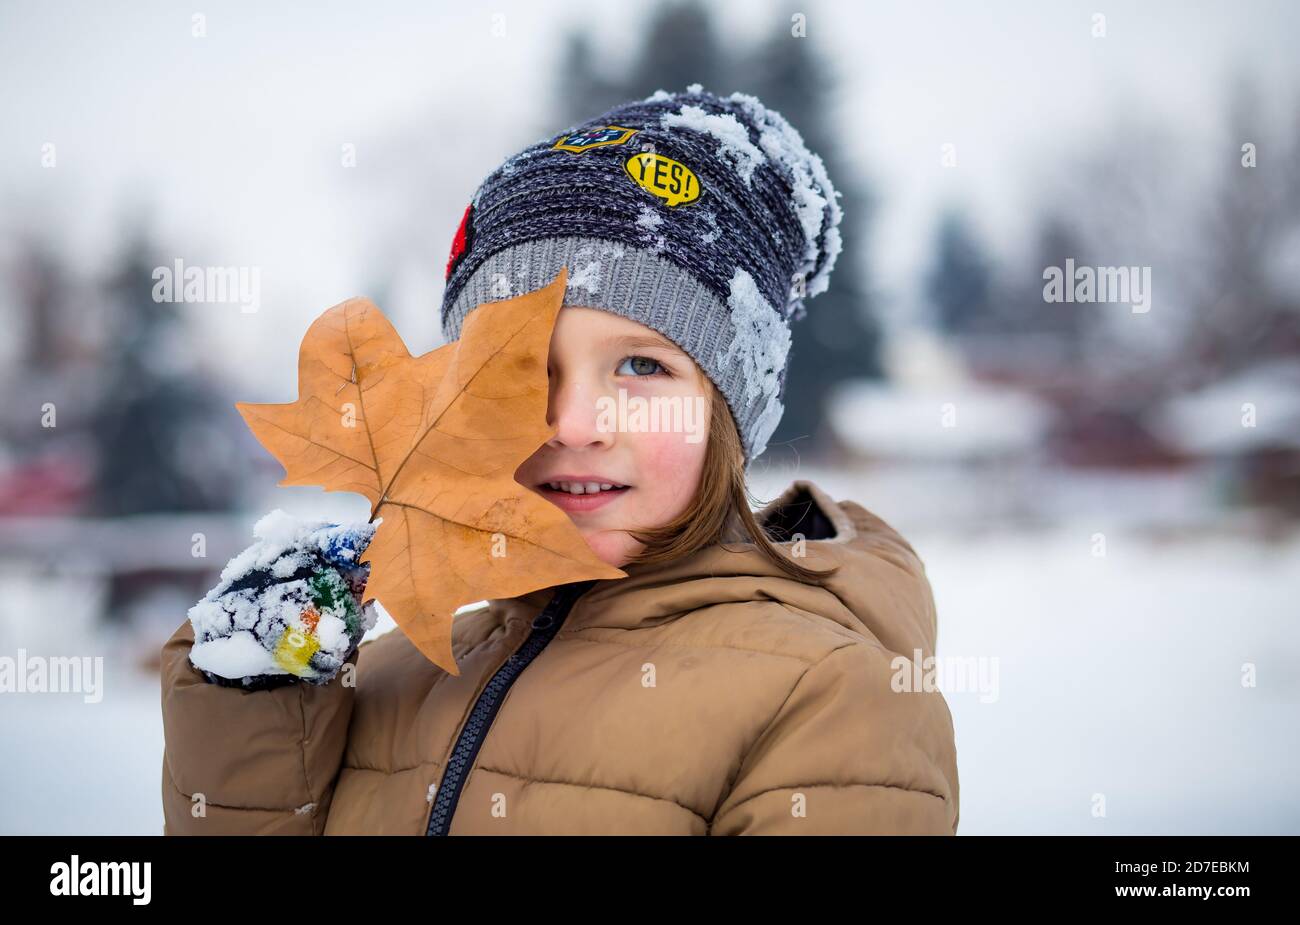 Kleiner Junge, der Blatt vor sein Gesicht hält. Schnee auf seinem Hut. Übergang Herbst Winter Stockfoto